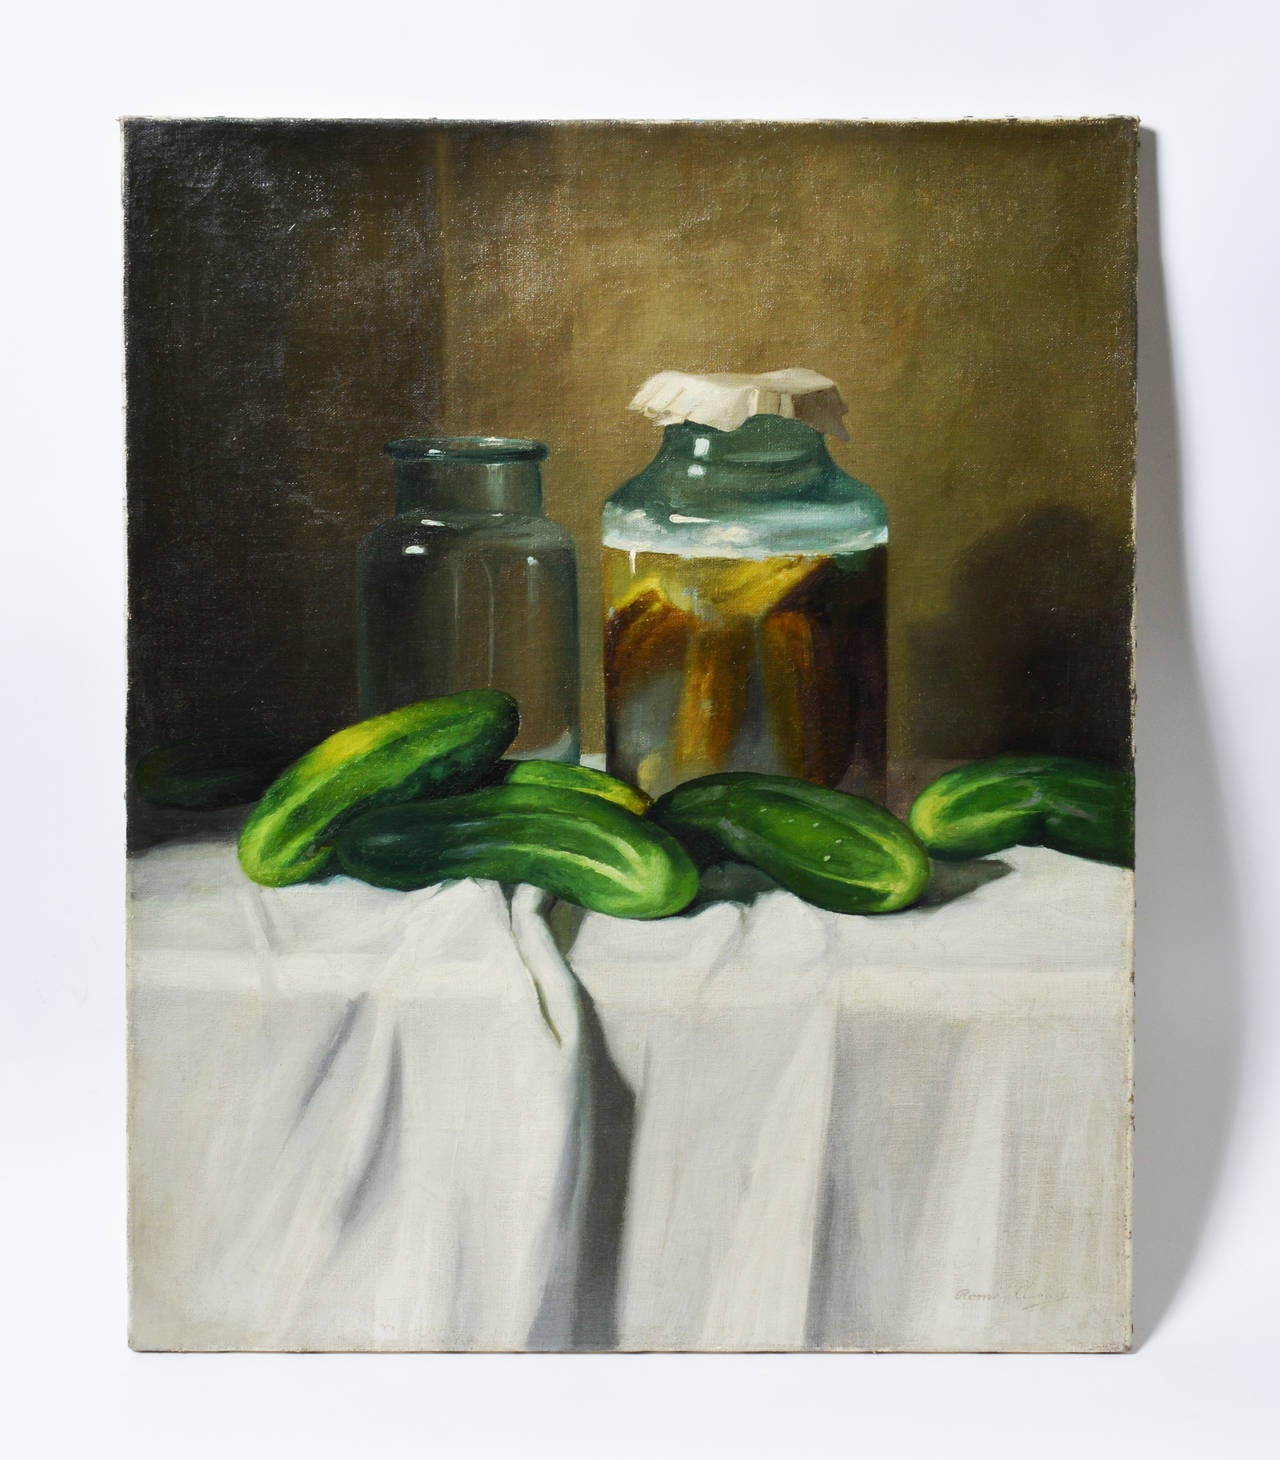 The Pickle Jar - Painting by Romek Arpad